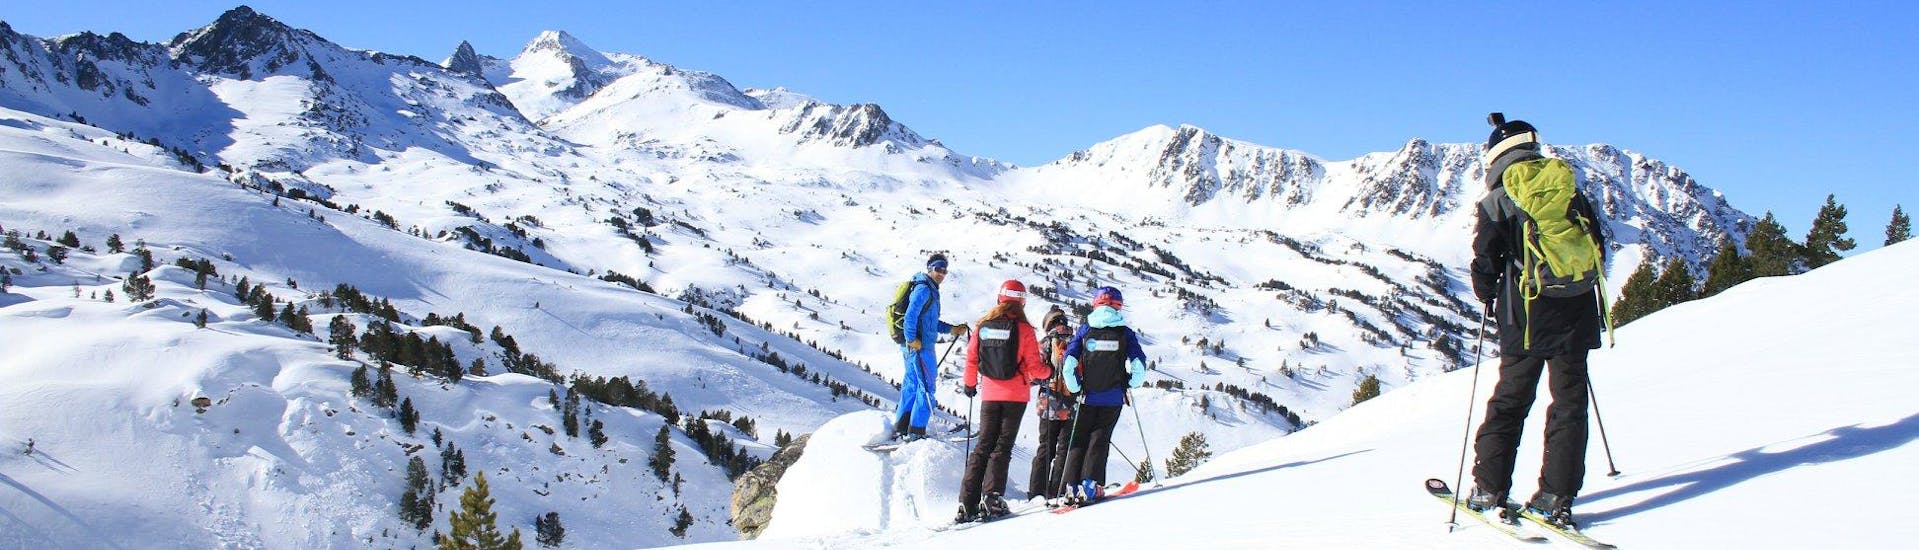 Des skieurs attendent les instructions de leur moniteur de ski de l'école de ski ESI du Tourmalet à la Mongie avant le début de leur Cours de ski pour Adultes - Premier cours.